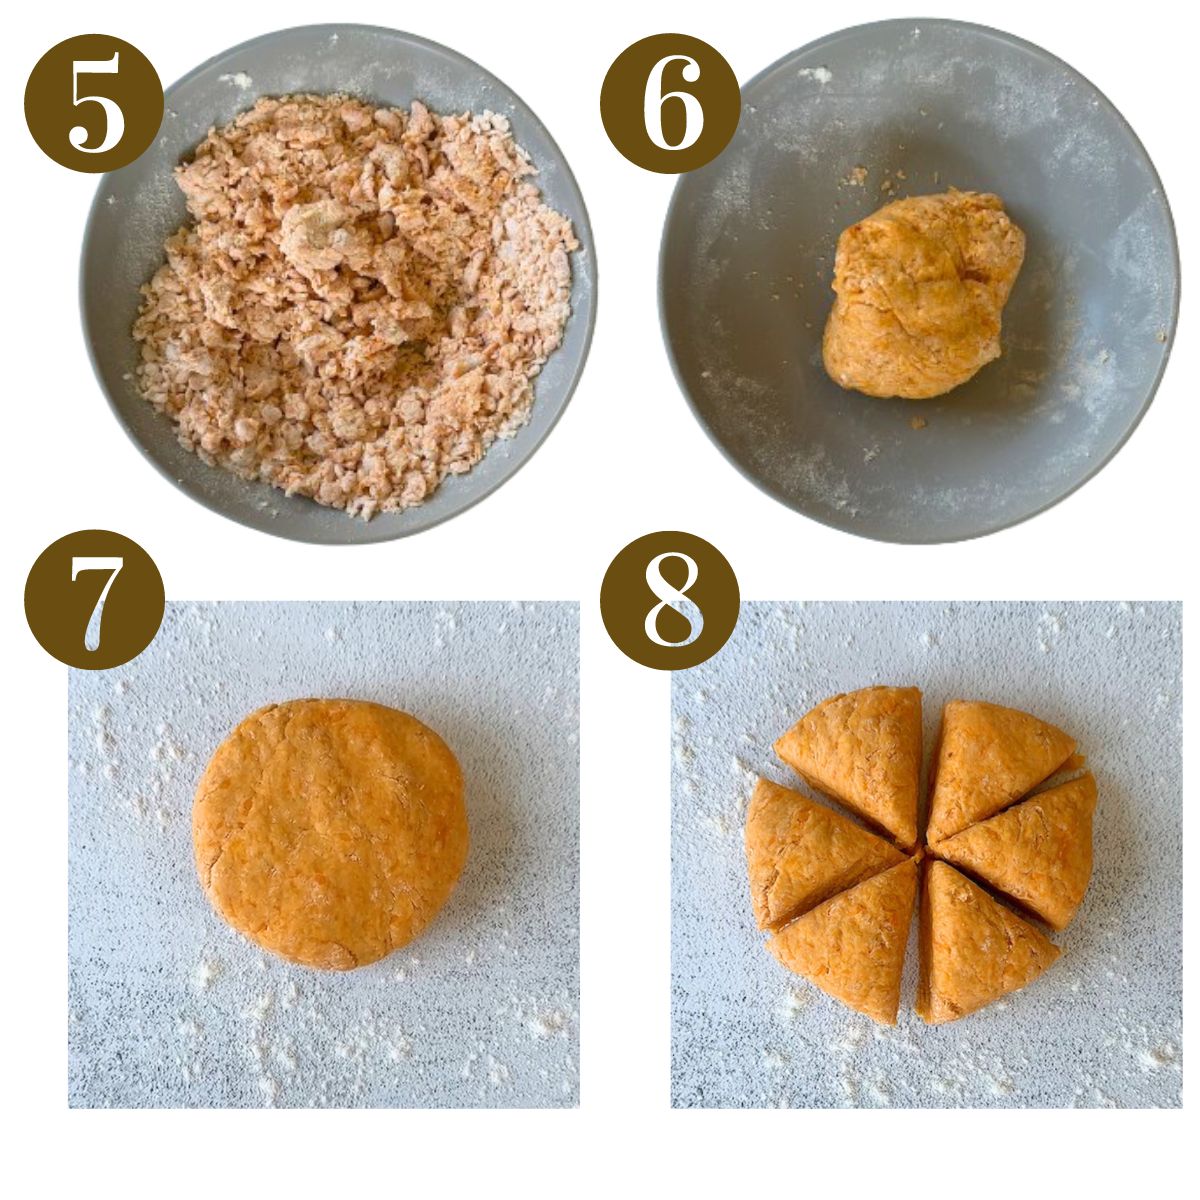 Steps to make sweet potato tortillas.